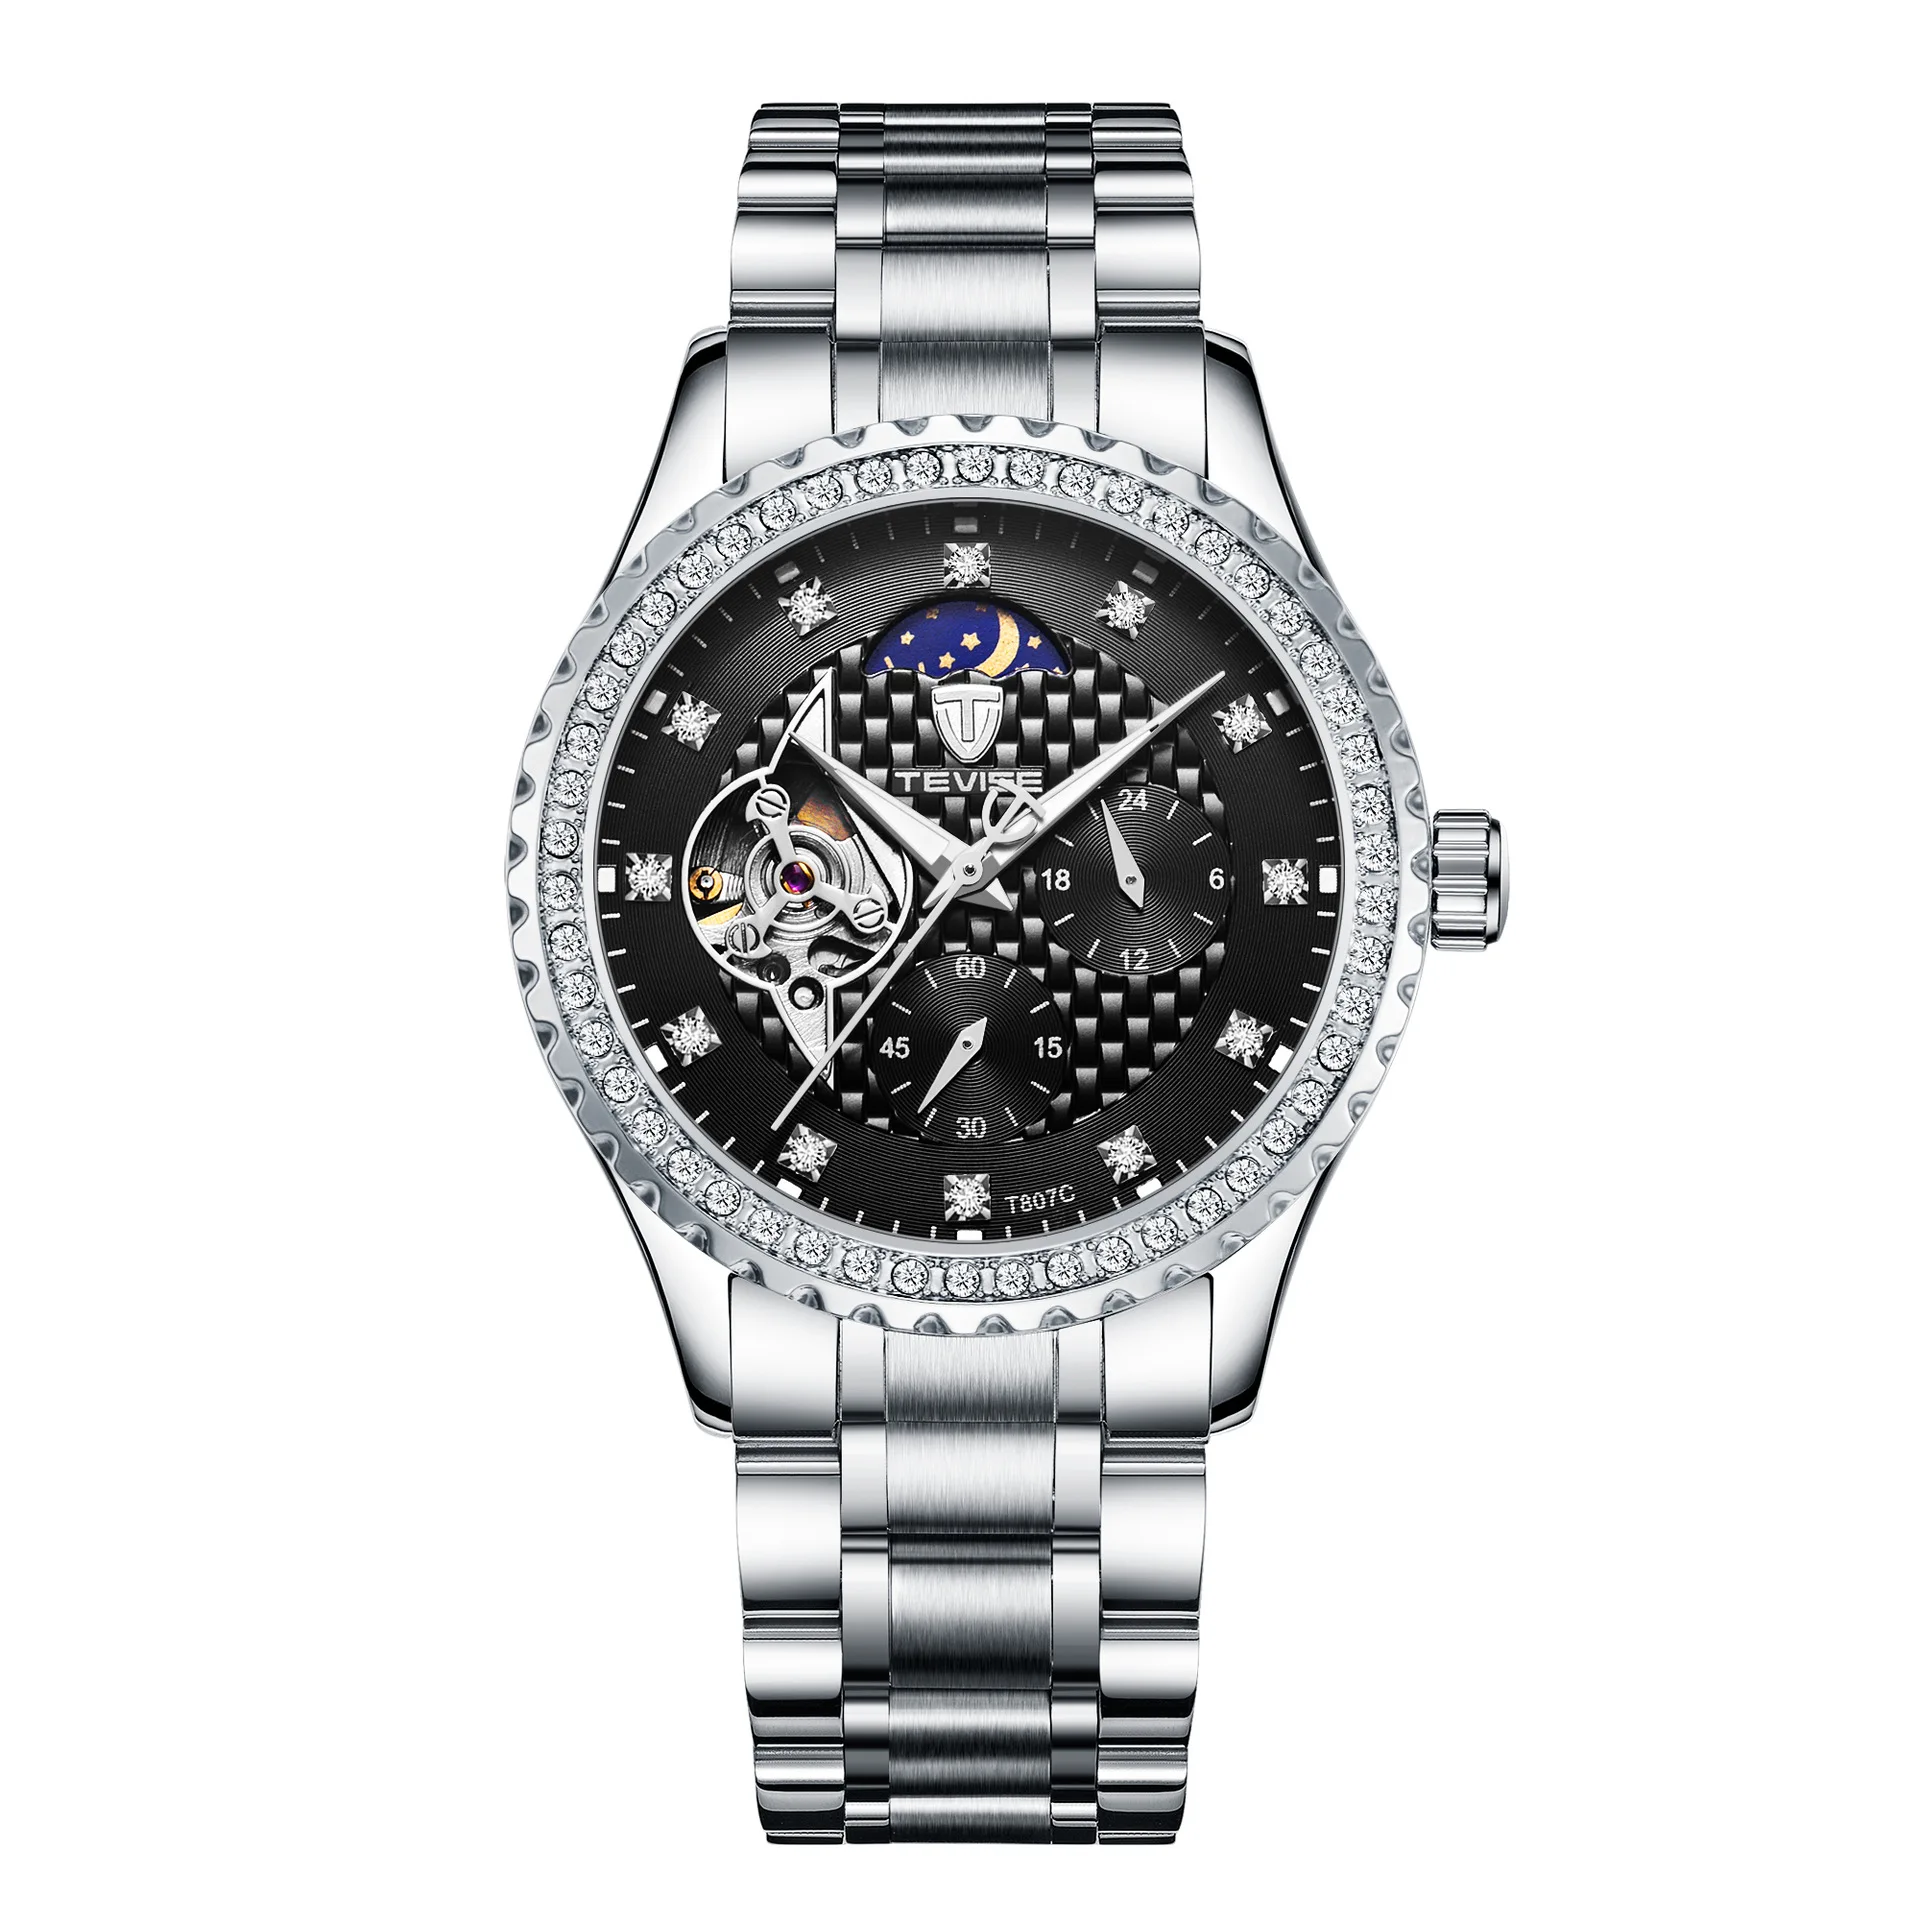 Romantic diamond watch Watch full diamond men's watch Romantic Watches for man Romantic Watches